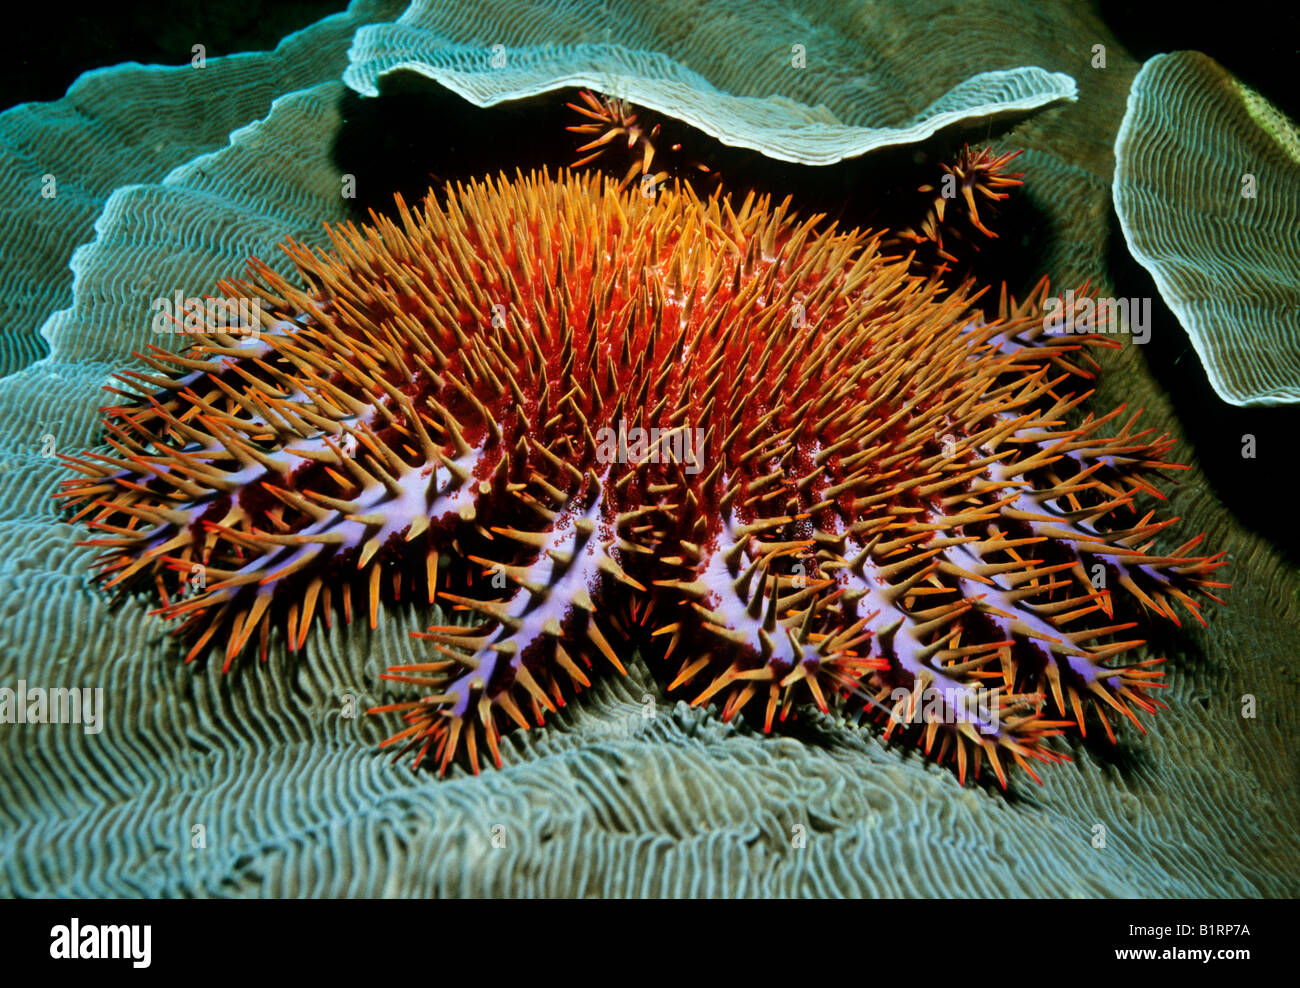 La couronne d'Épines prédateurs Poissons Star (Acanthaster planci) rss sur les polypes de coraux durs (une Scleractiniaor), Oman, Arabi Banque D'Images